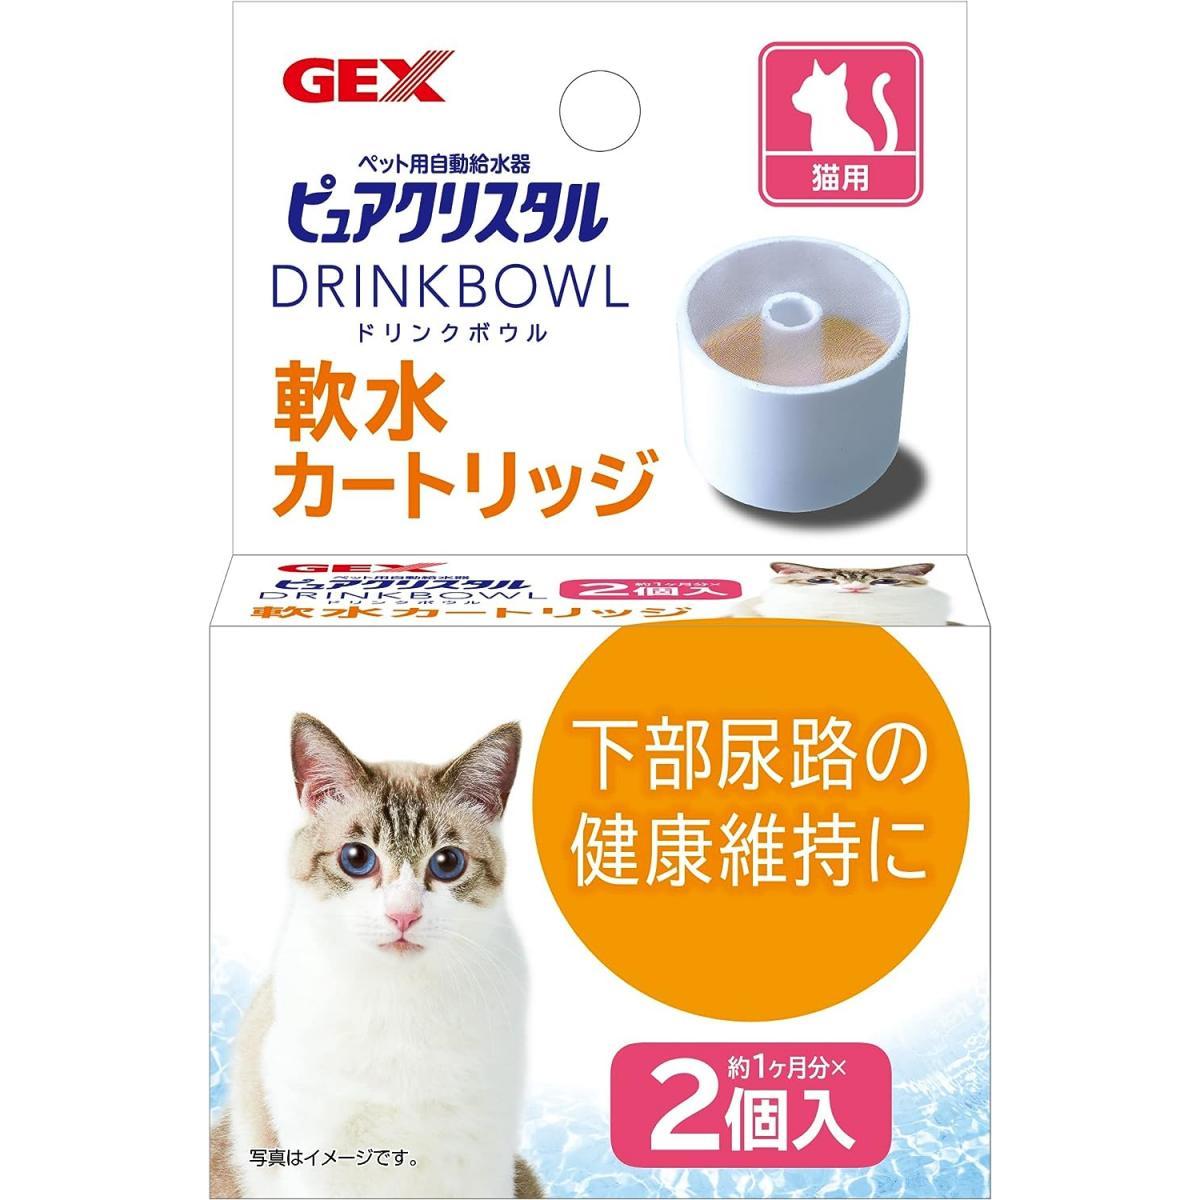 GEX 猫用 ピュアクリスタル ドリンクボウル 軟水カートリッジ 2個入り ねこ 猫 給水器 カートリッジ 交換